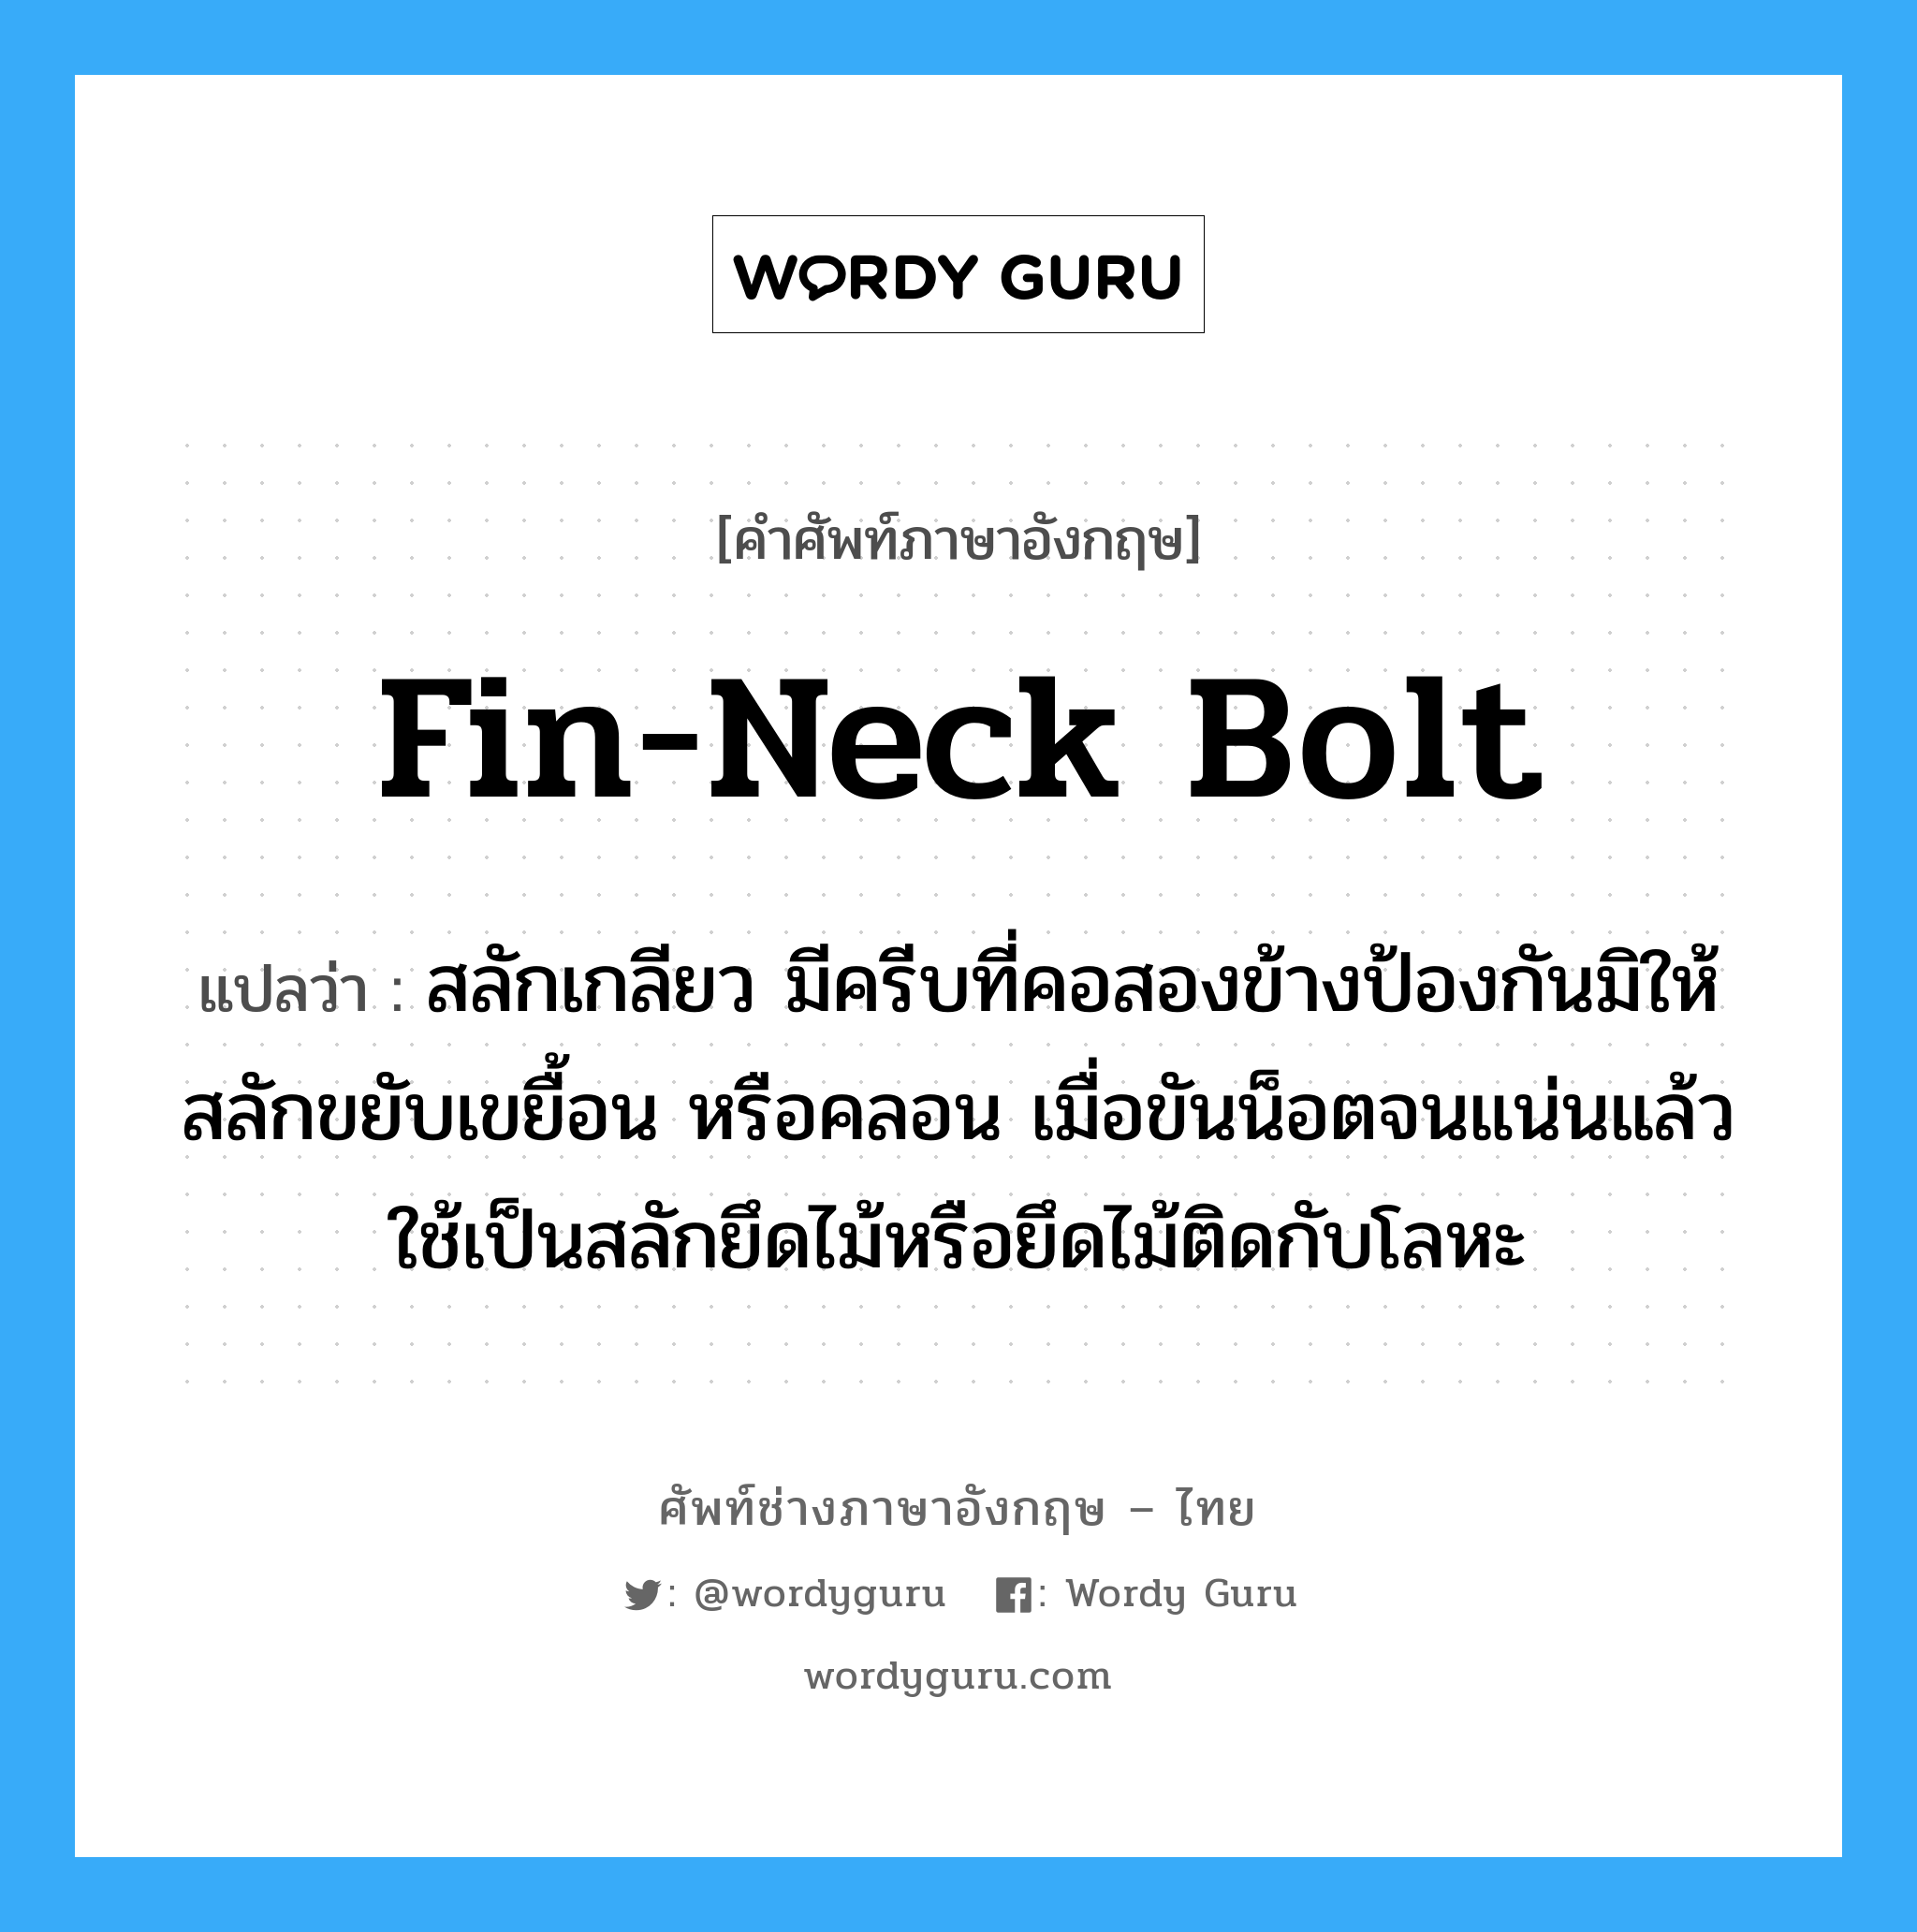 fin-neck bolt แปลว่า?, คำศัพท์ช่างภาษาอังกฤษ - ไทย fin-neck bolt คำศัพท์ภาษาอังกฤษ fin-neck bolt แปลว่า สลักเกลียว มีครีบที่คอสองข้างป้องกันมิให้สลักขยับเขยื้อน หรือคลอน เมื่อขันน็อตจนแน่นแล้วใช้เป็นสลักยึดไม้หรือยึดไม้ติดกับโลหะ